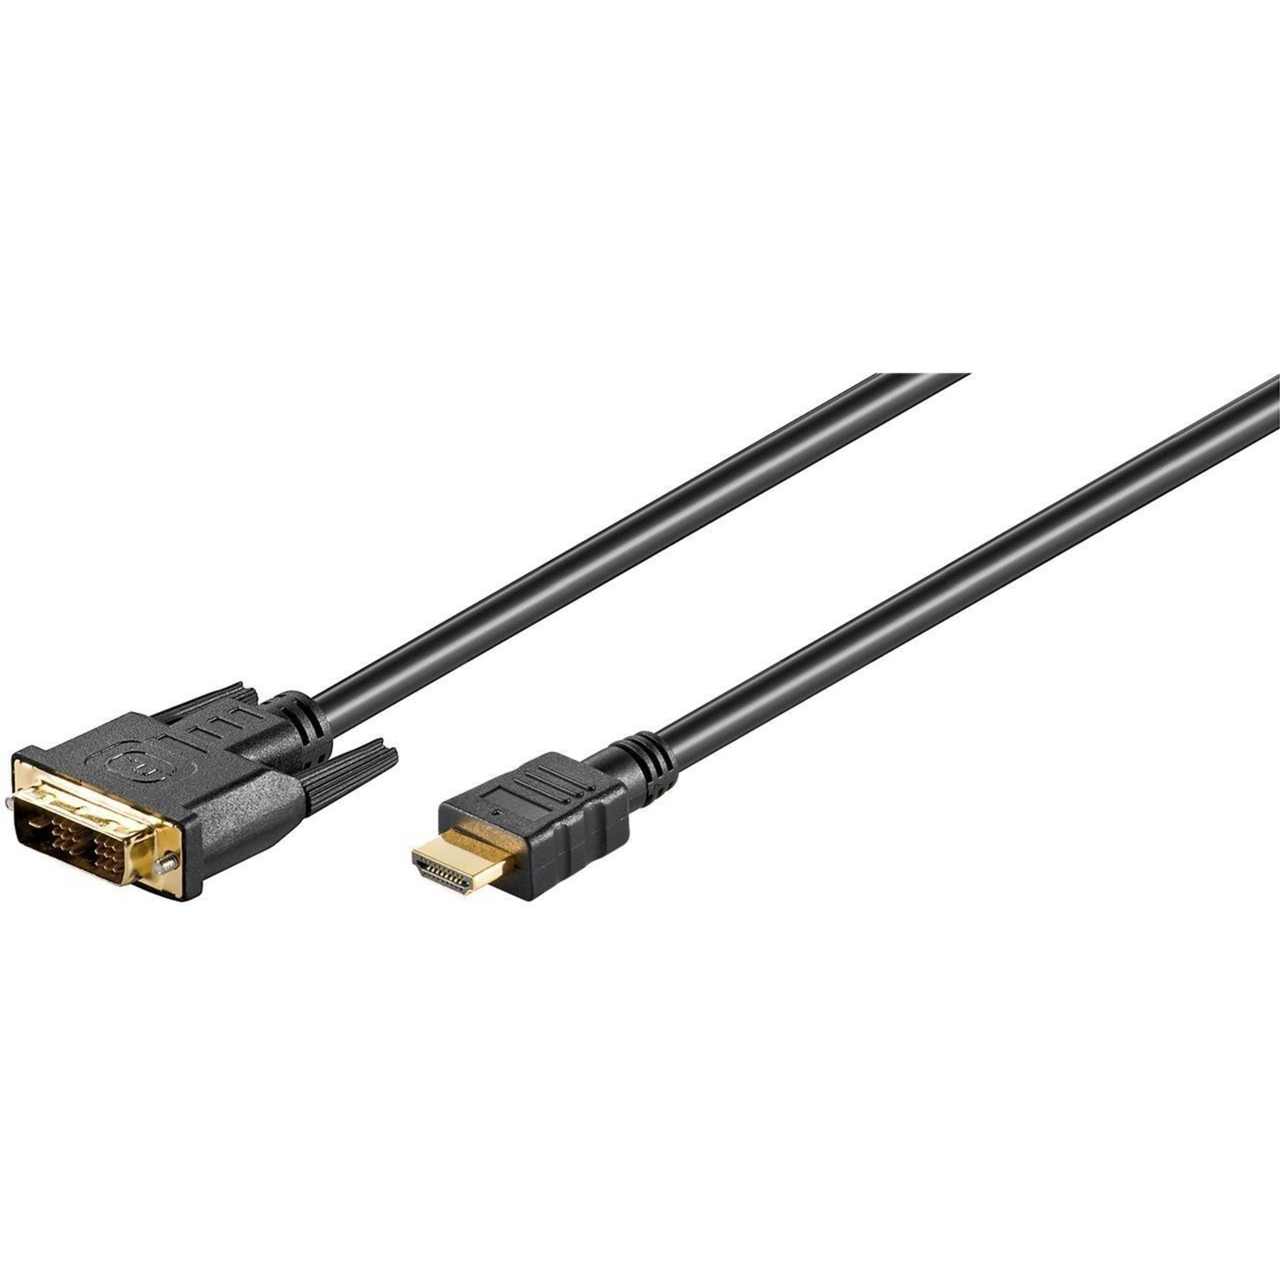 Image of Alternate - Adapterkabel DVI-D (Stecker) > HDMI (Stecker) online einkaufen bei Alternate